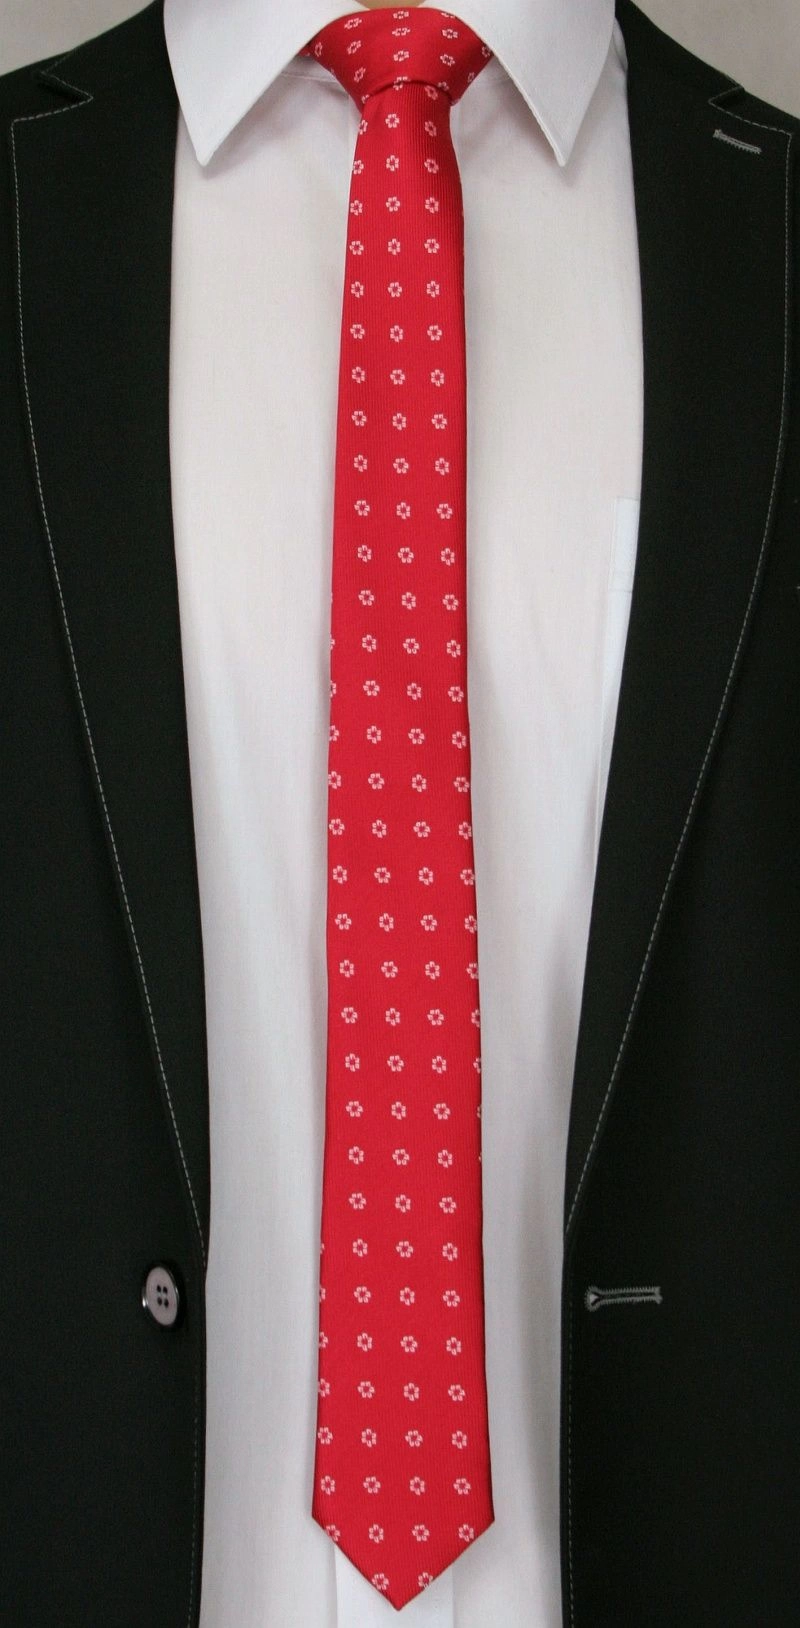 Czerwony Stylowy Krawat (Śledź) Męski w Białe Kwiatki -ALTIES- 5 cm, Wąski, Motyw Florystyczny